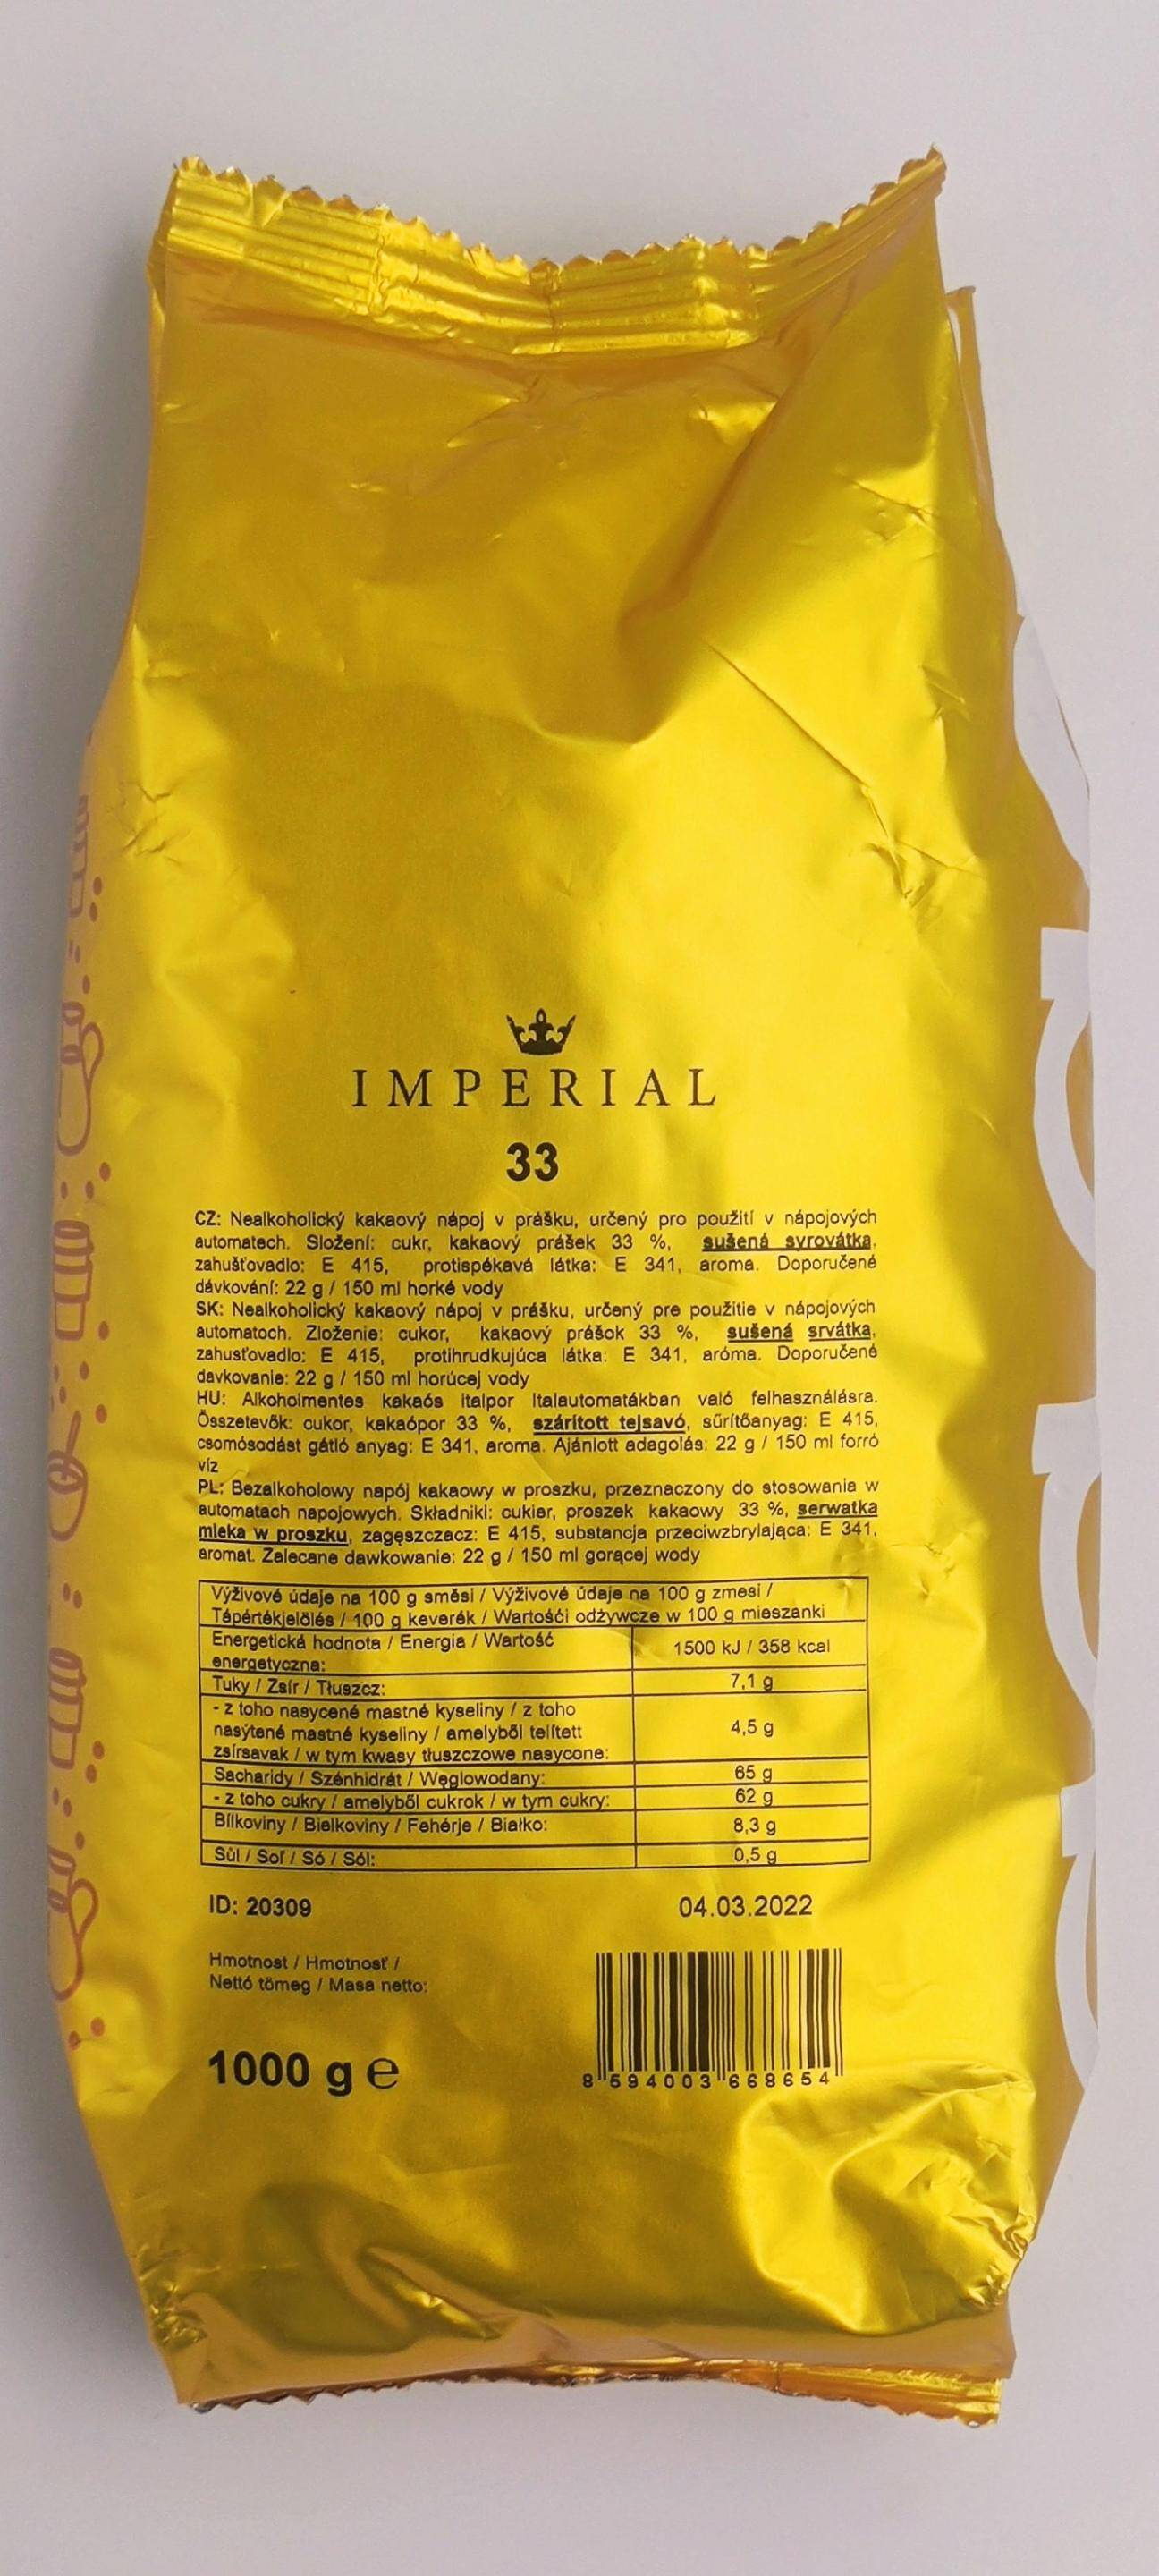 Napój kakaowy Imperial 33 % 1 kg